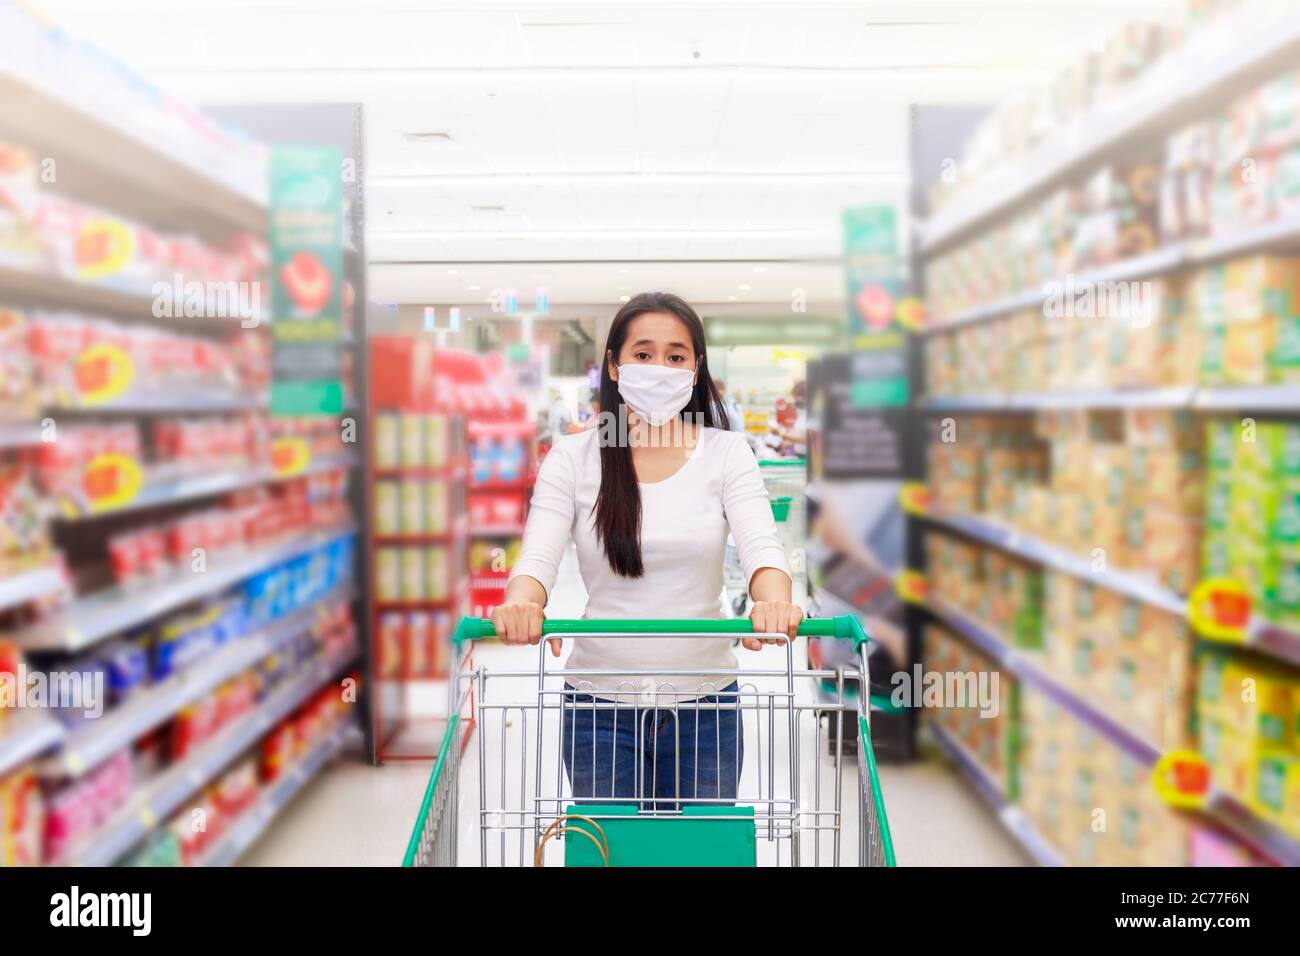 Asiatische Frau tragen Gesichtsmaske Push Warenkorb im Supermarkt Kaufhaus. Mädchen suchen Lebensmittel, etwas zu kaufen. Während der Coronavirus-Krise oder CO Stockfoto